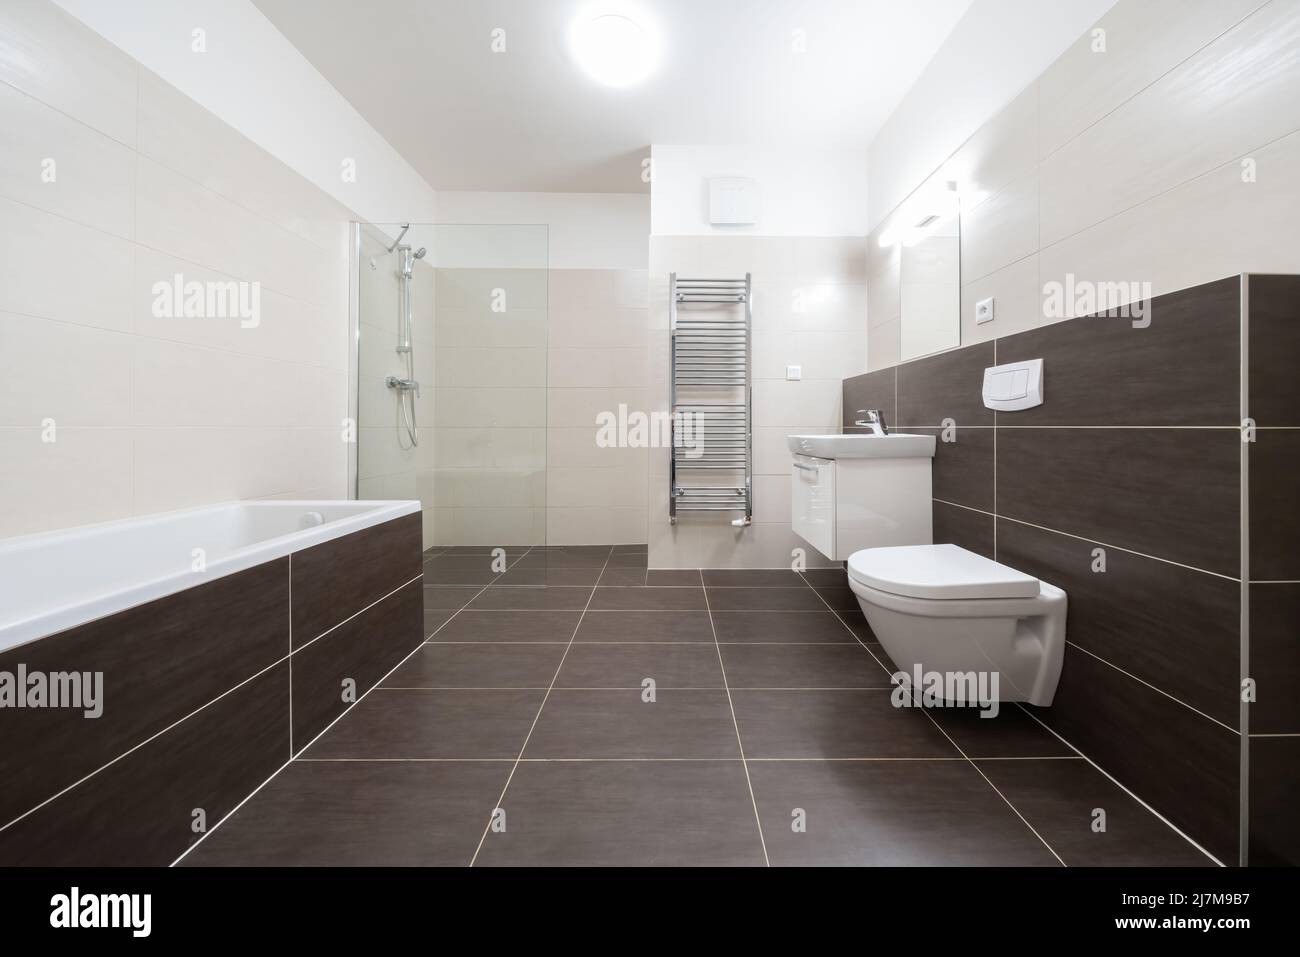 Celadna, Tschechien - 05.07.2022: Leeres Bad im modernen, zeitgenössischen Stil mit braunen Fliesen und weißen Wänden und Decken. Badewanne, hängende Toilette und Stockfoto